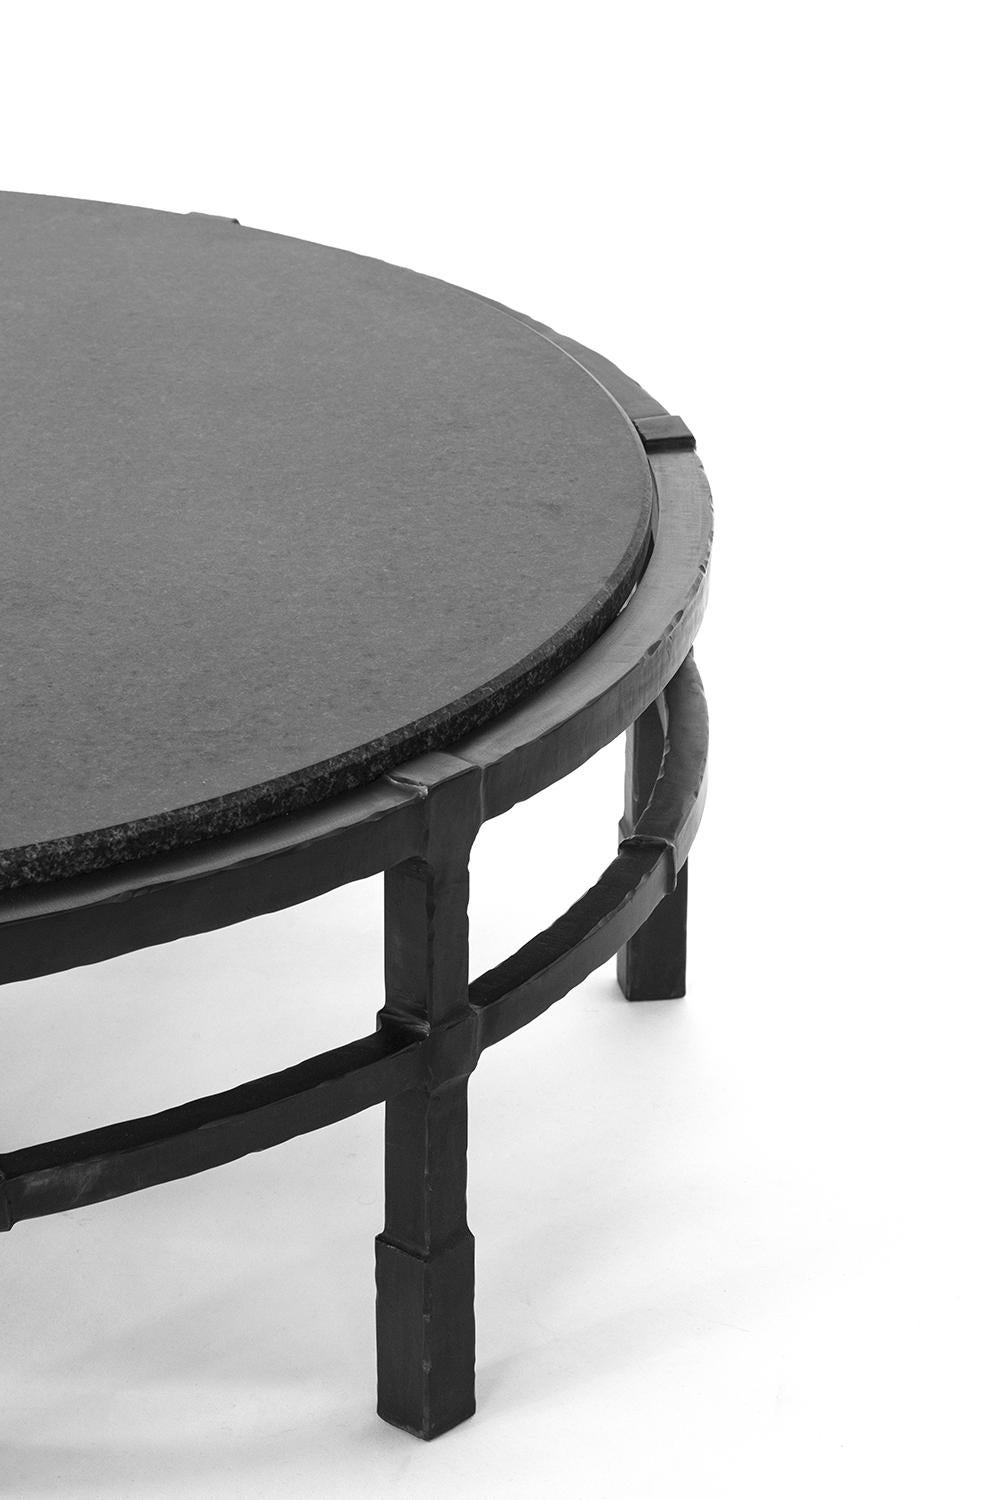 American Coffee Table Absolute-Black-Granite Modern Handmade Circle Blackened Steel Large For Sale